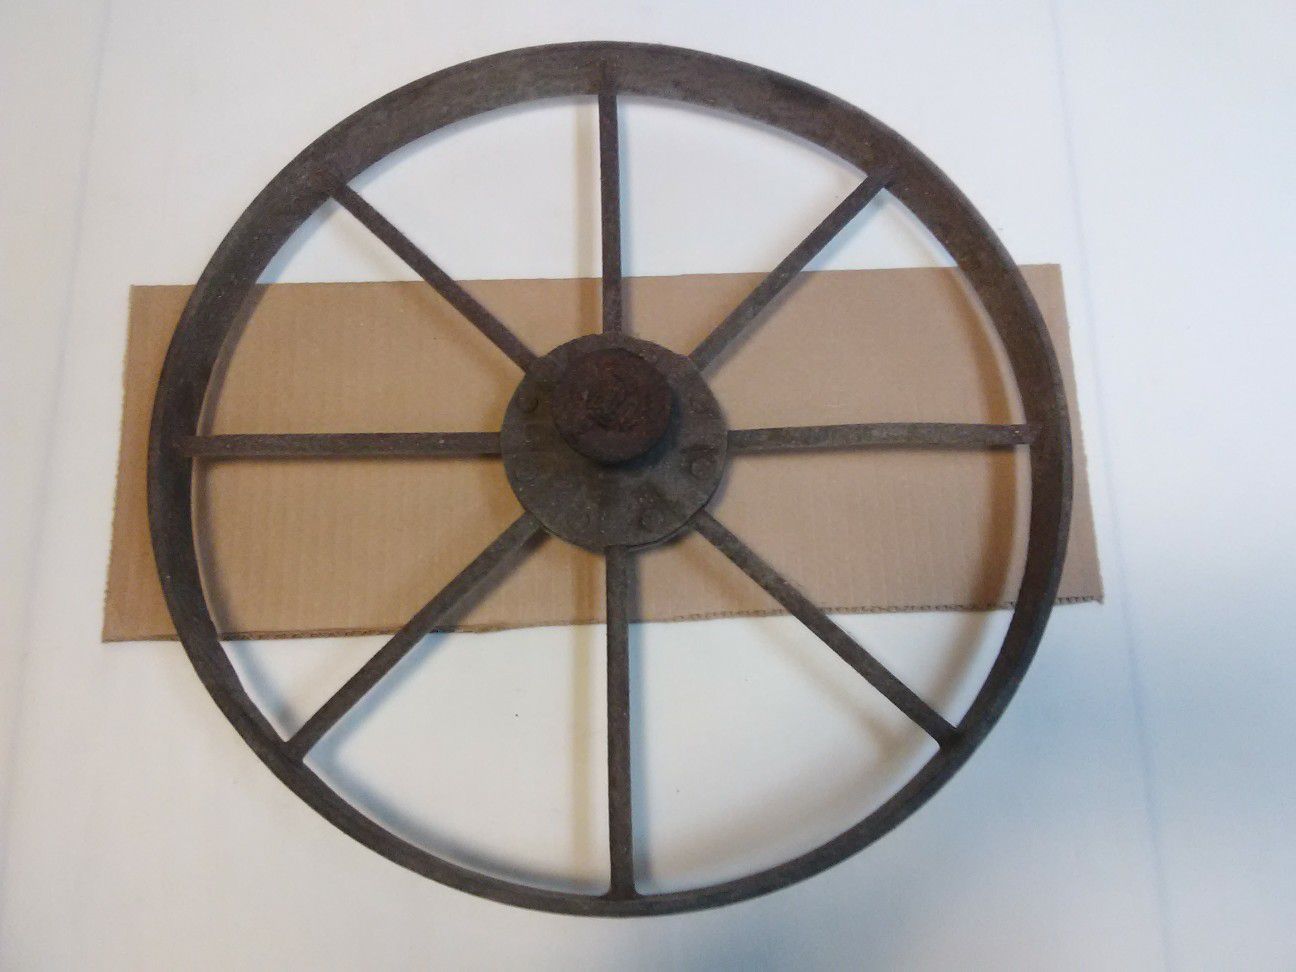 Vintage Iron Wheel